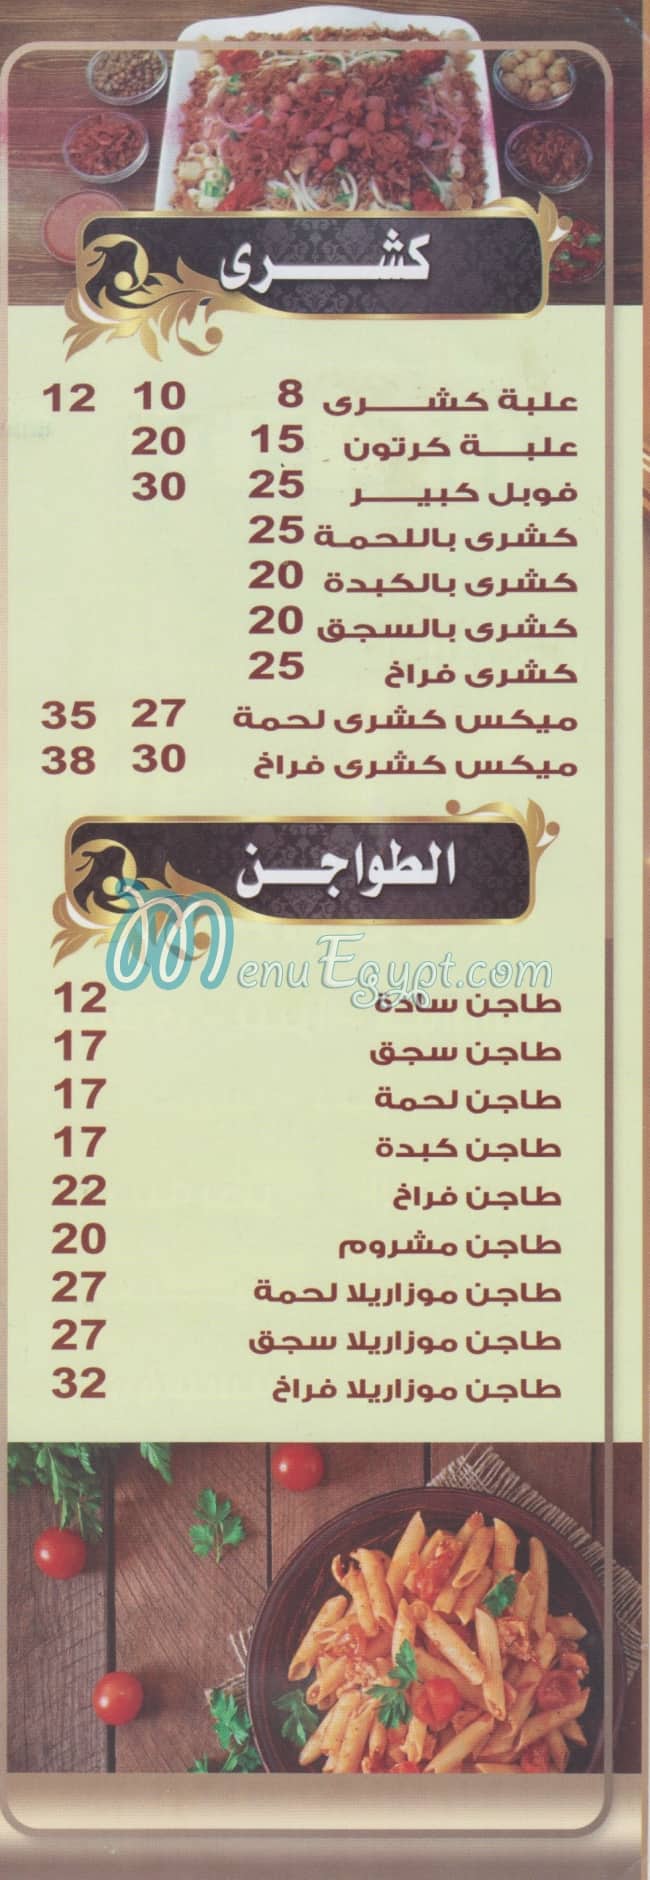 Koshary Hend El Maadi menu prices